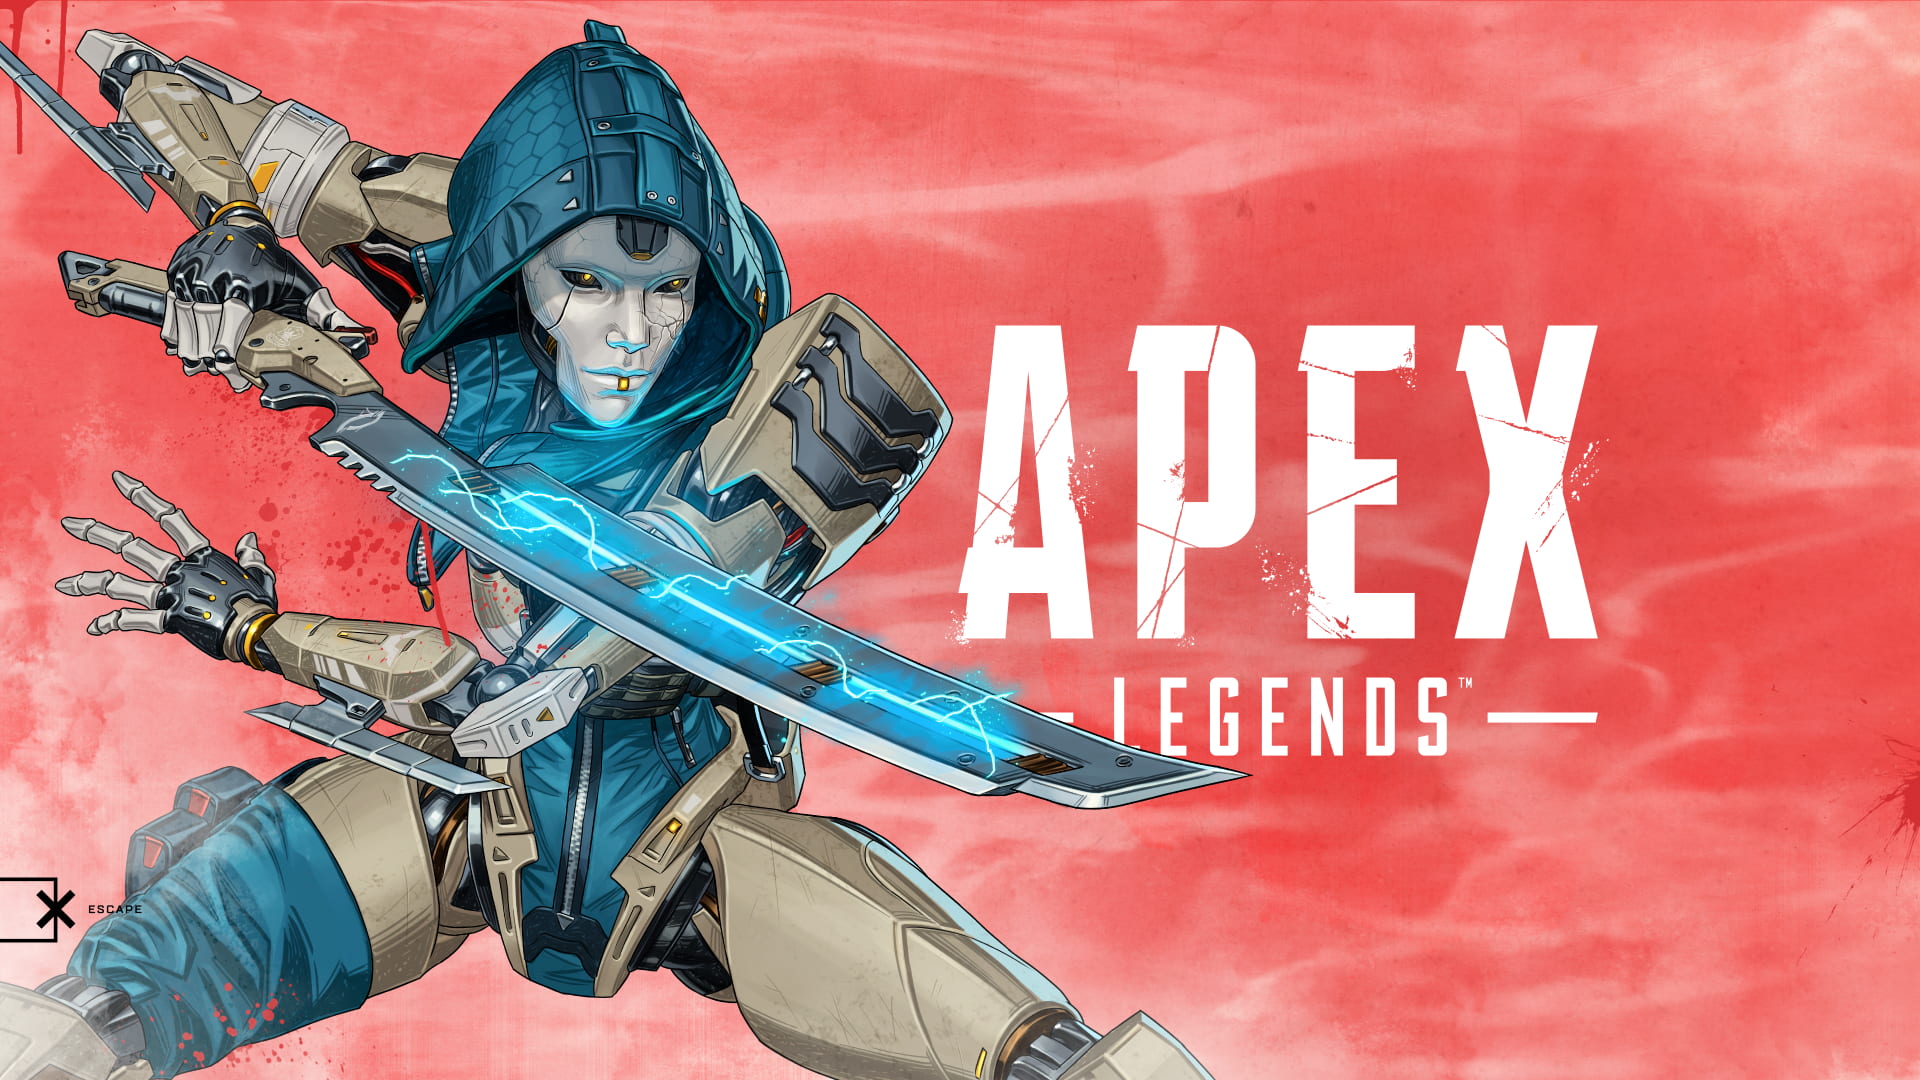 Apex Legends Season 11 'Escape' Patch Notes: Release Date, New